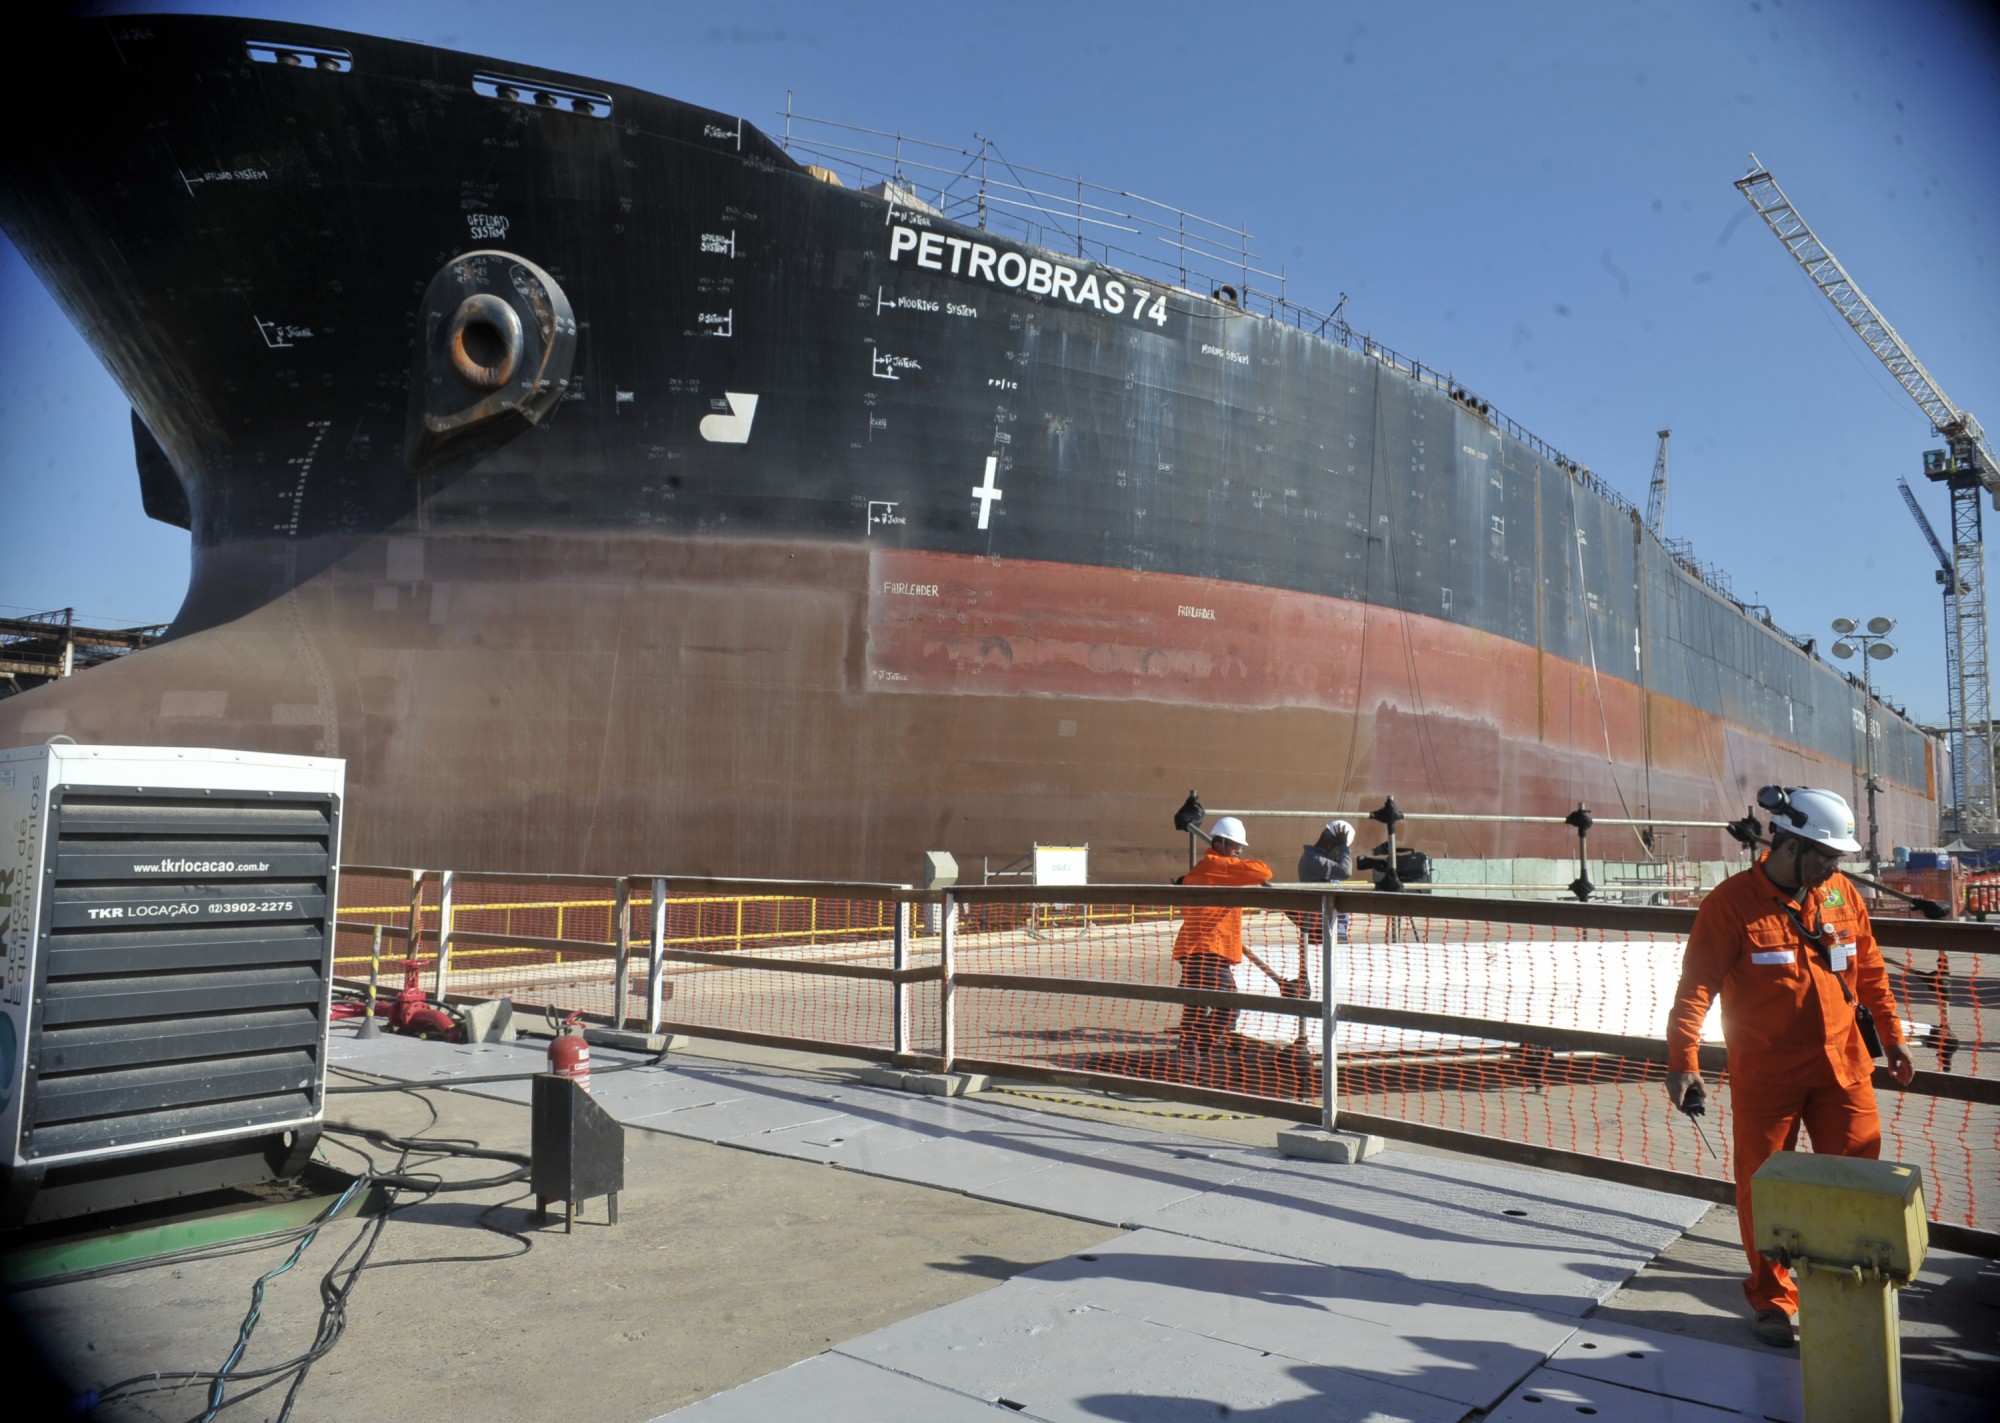 Petrobras ship, Rio de Janeiro, Brazil, Brazil News